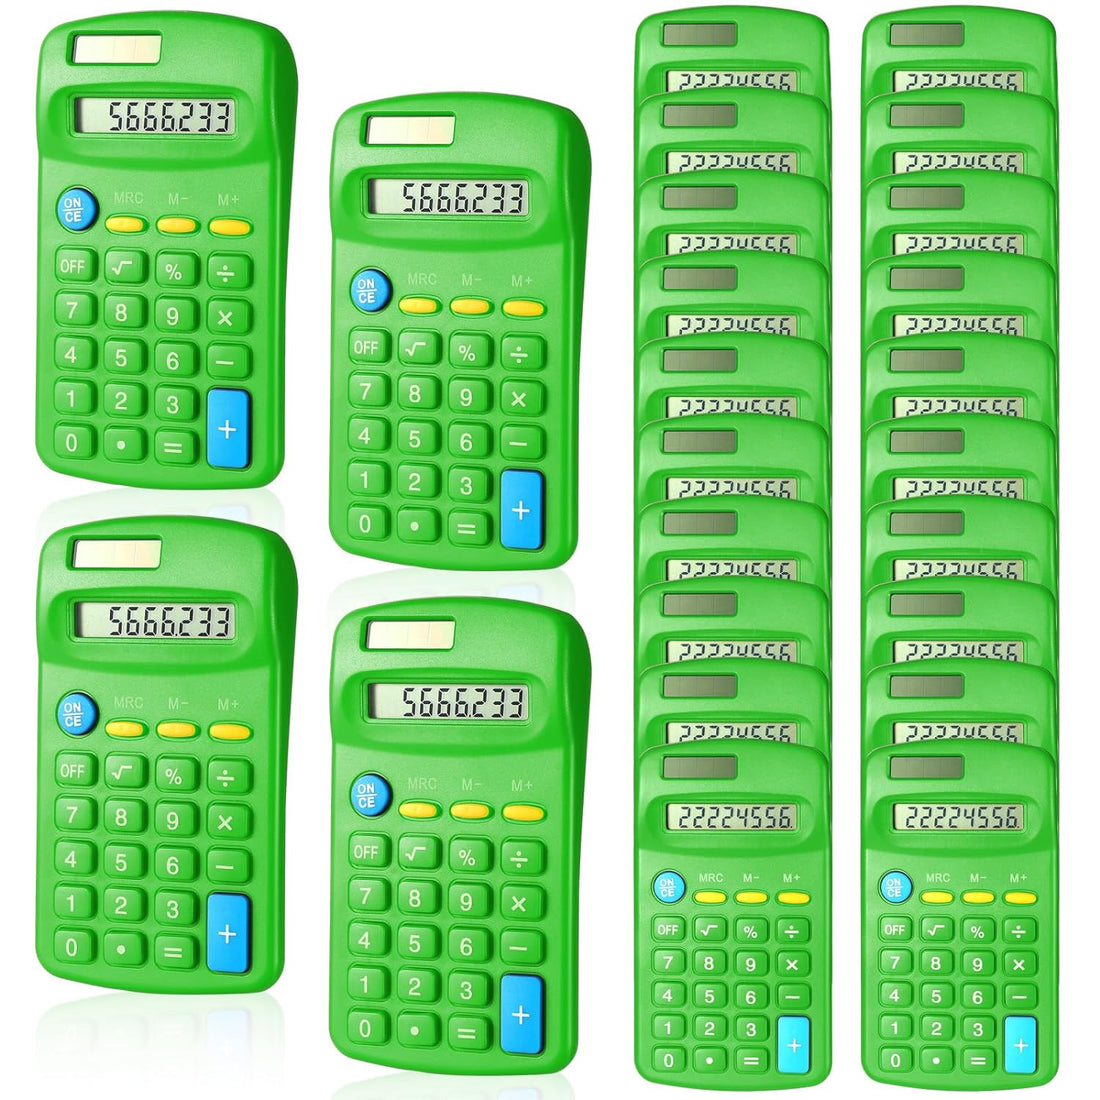 Copkim 24 Pieces Basic Calculators for Students Small Calculators Pocket Size Mini Calculators Dual Powered Handheld Calculator 8 Digit Display Desktop Calculators for School Desktop Home (Green)